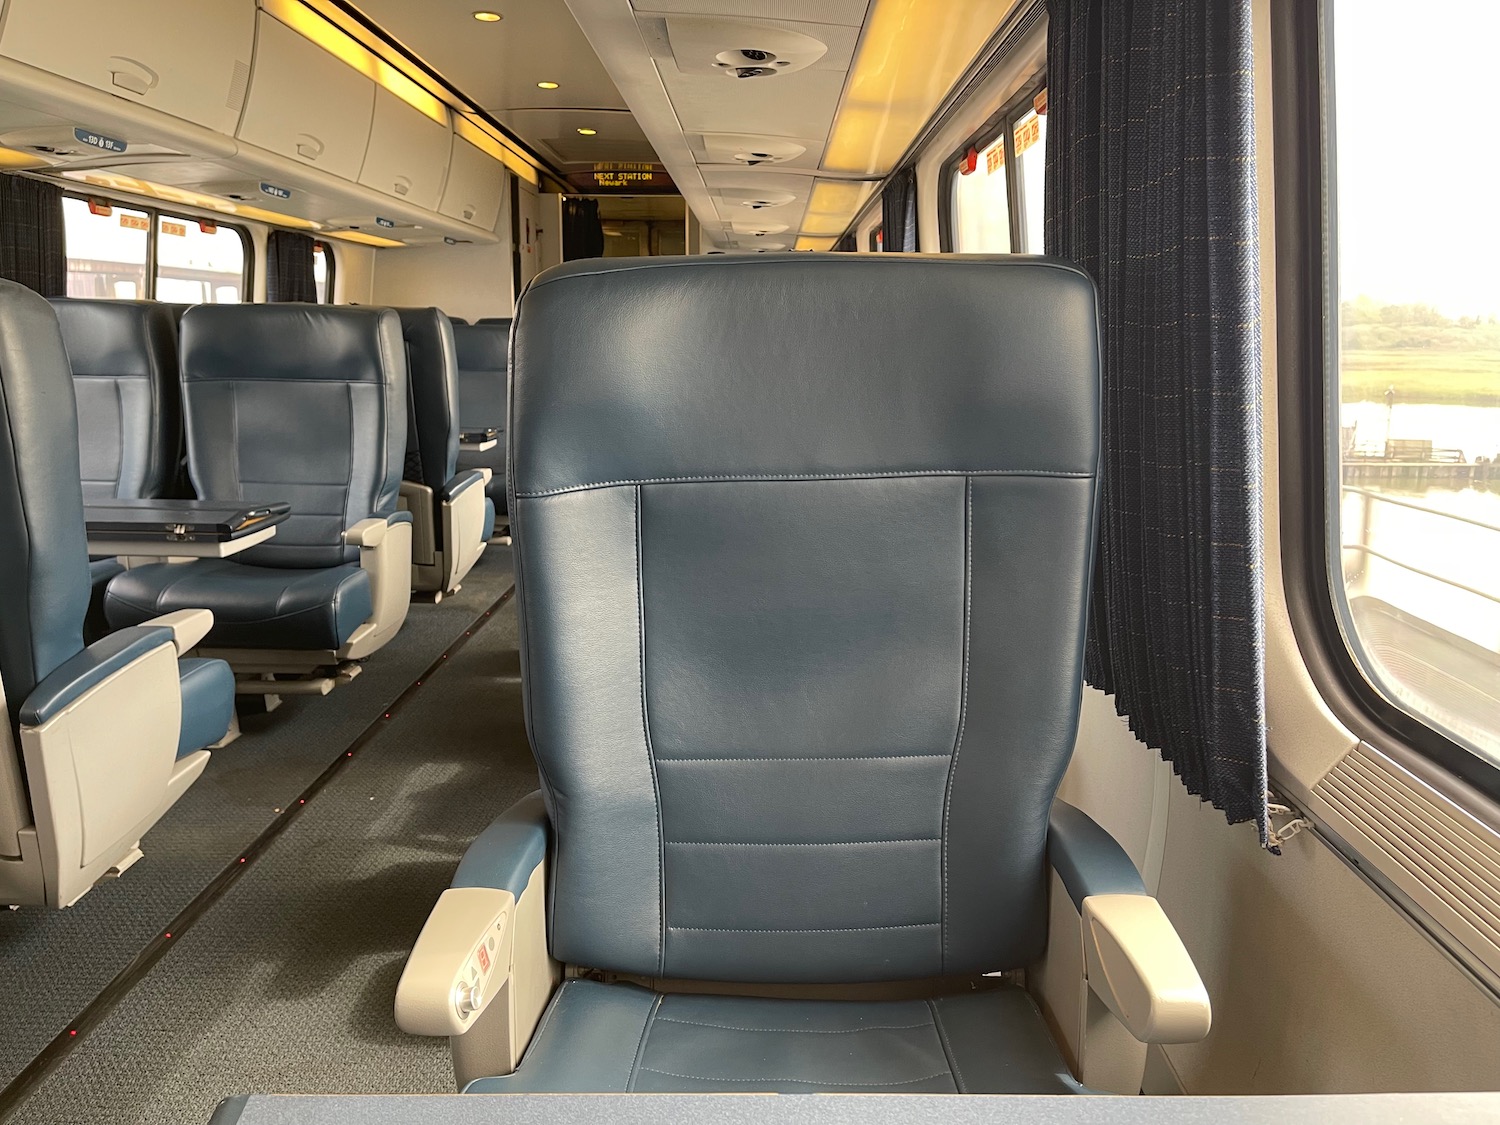 a seat in a train